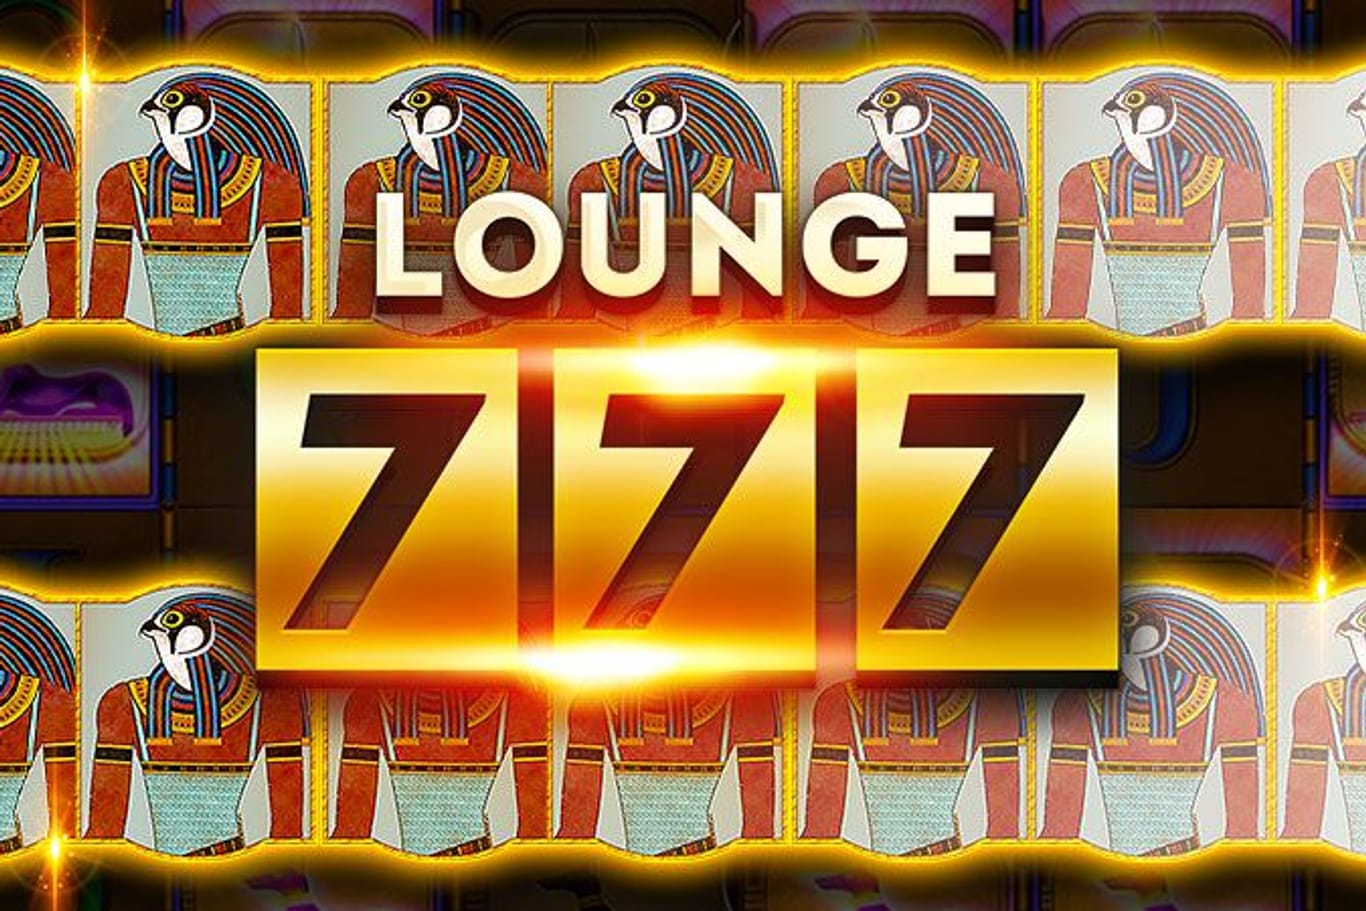 Lounge 777(Quelle: Whow)